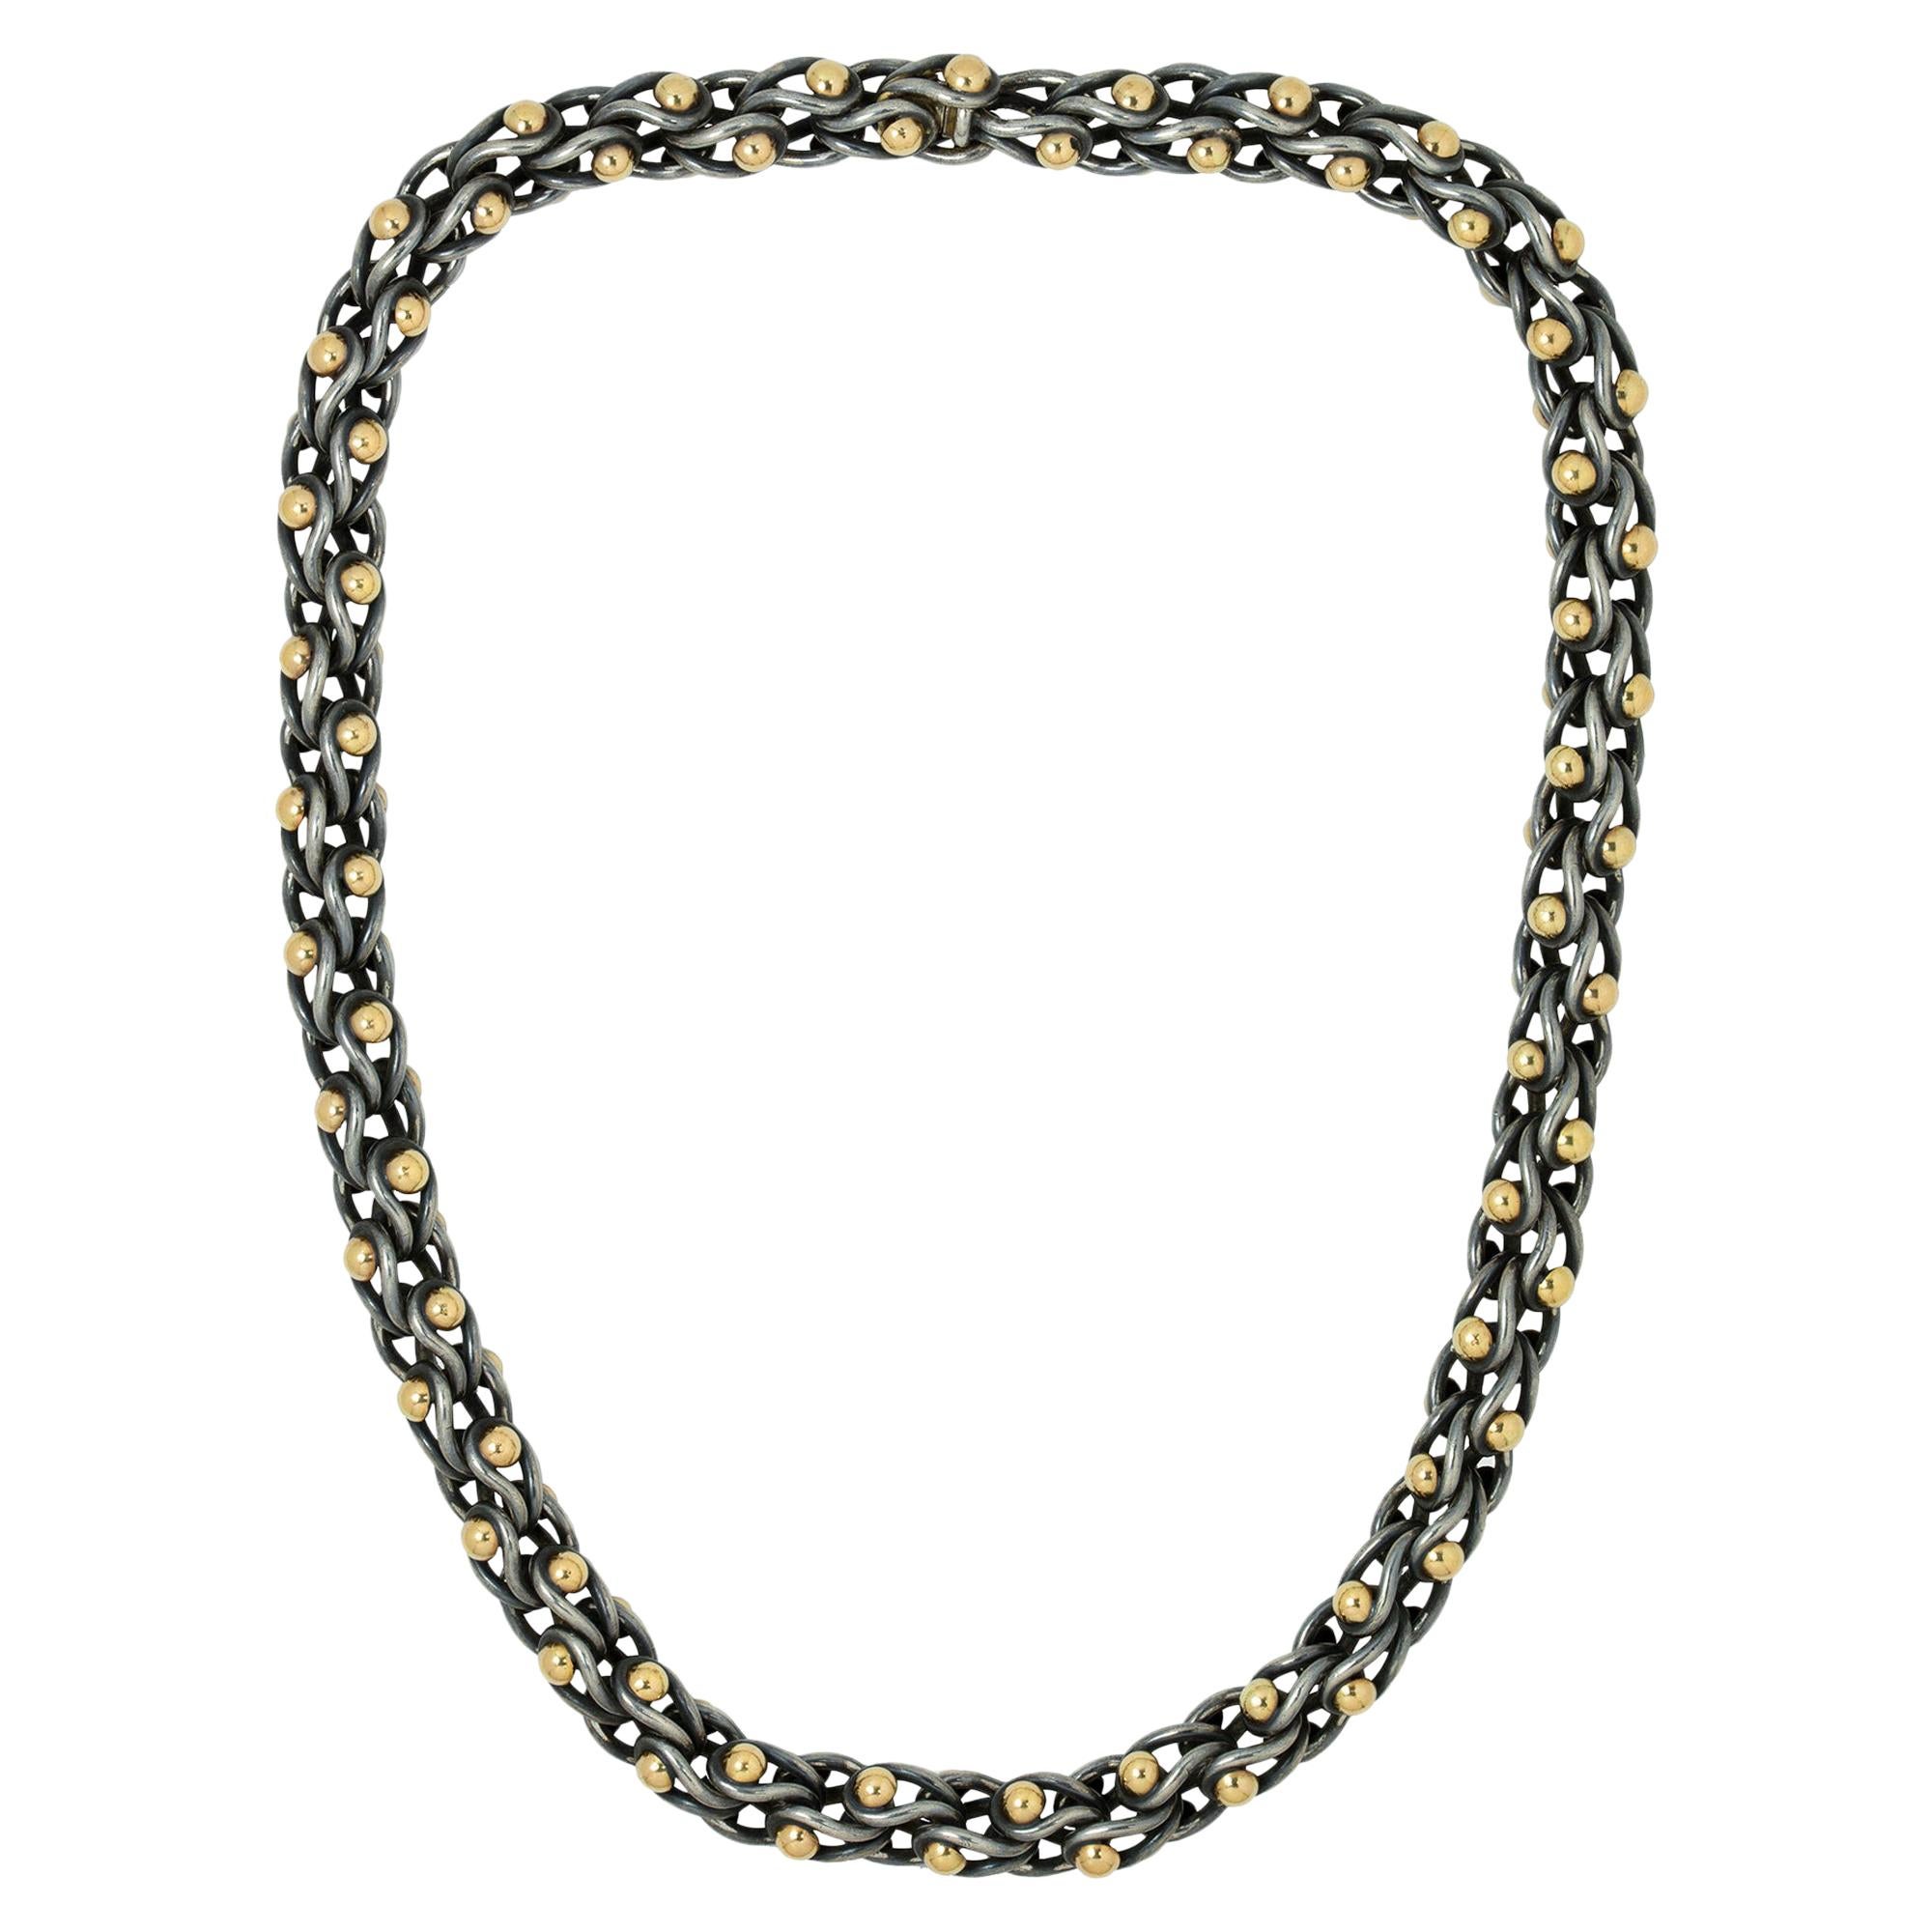 Schwarze Wasserballett-Halskette von Lucie Heskett-Brem